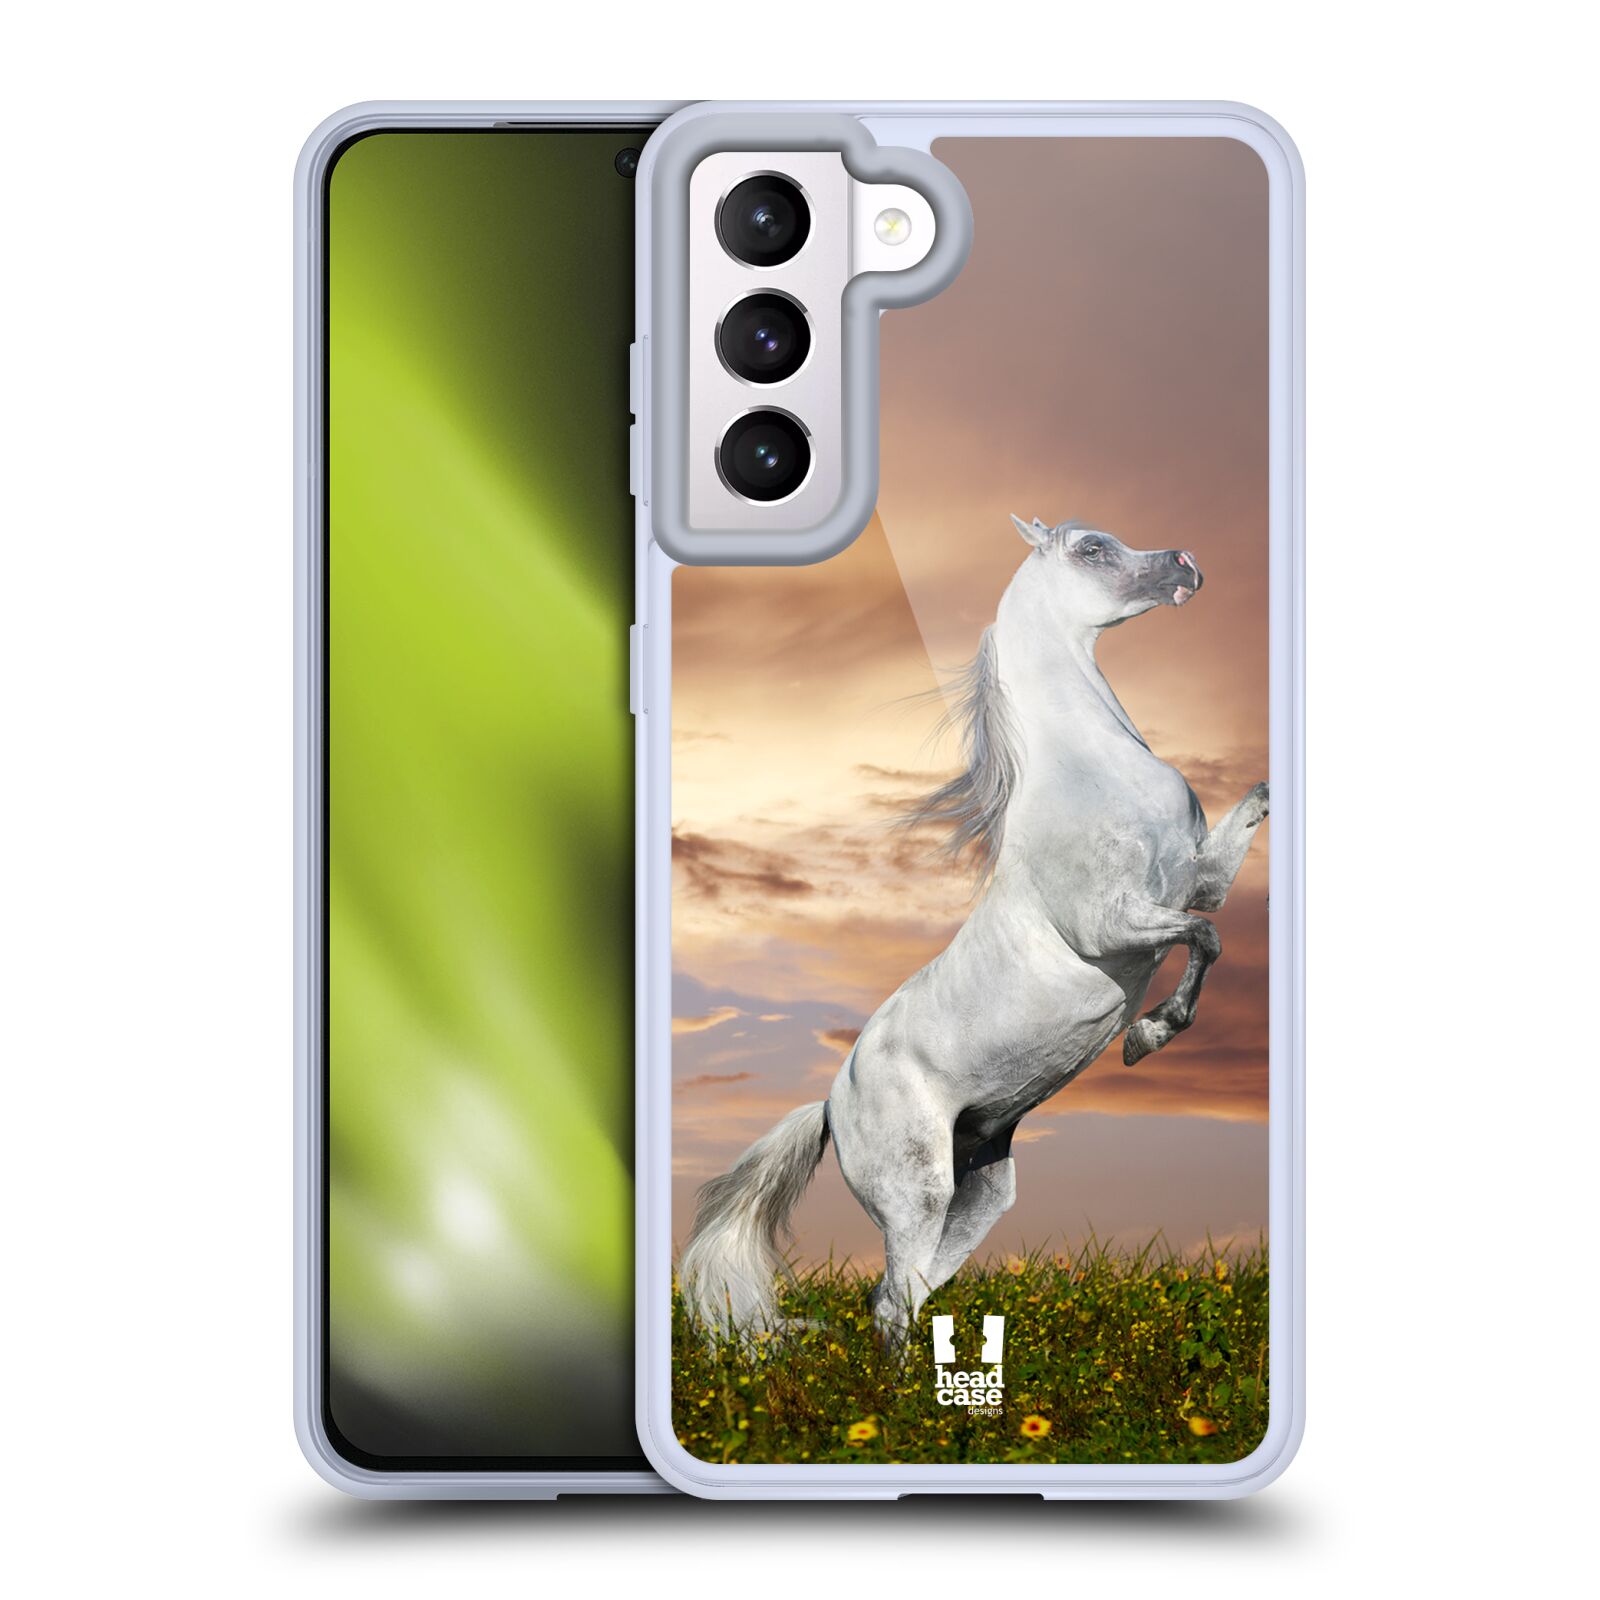 Plastový obal HEAD CASE na mobil Samsung Galaxy S21 5G vzor Divočina, Divoký život a zvířata foto DIVOKÝ KŮŇ MUSTANG BÍLÁ